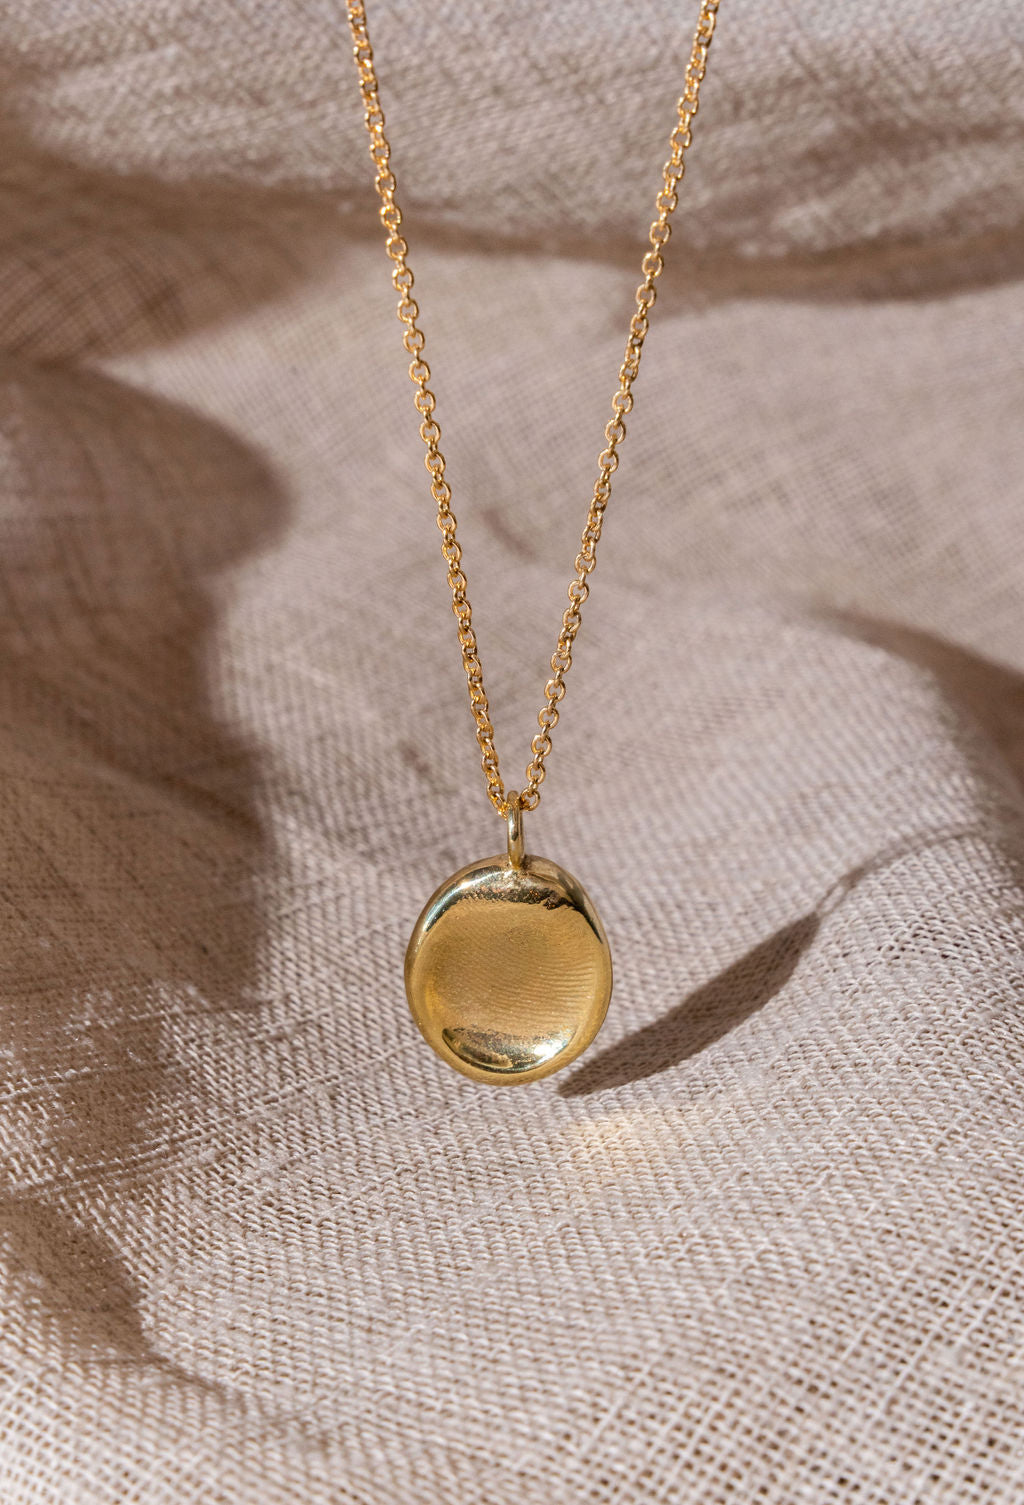 A gold fingerprint impression necklace dangling over natural linen.